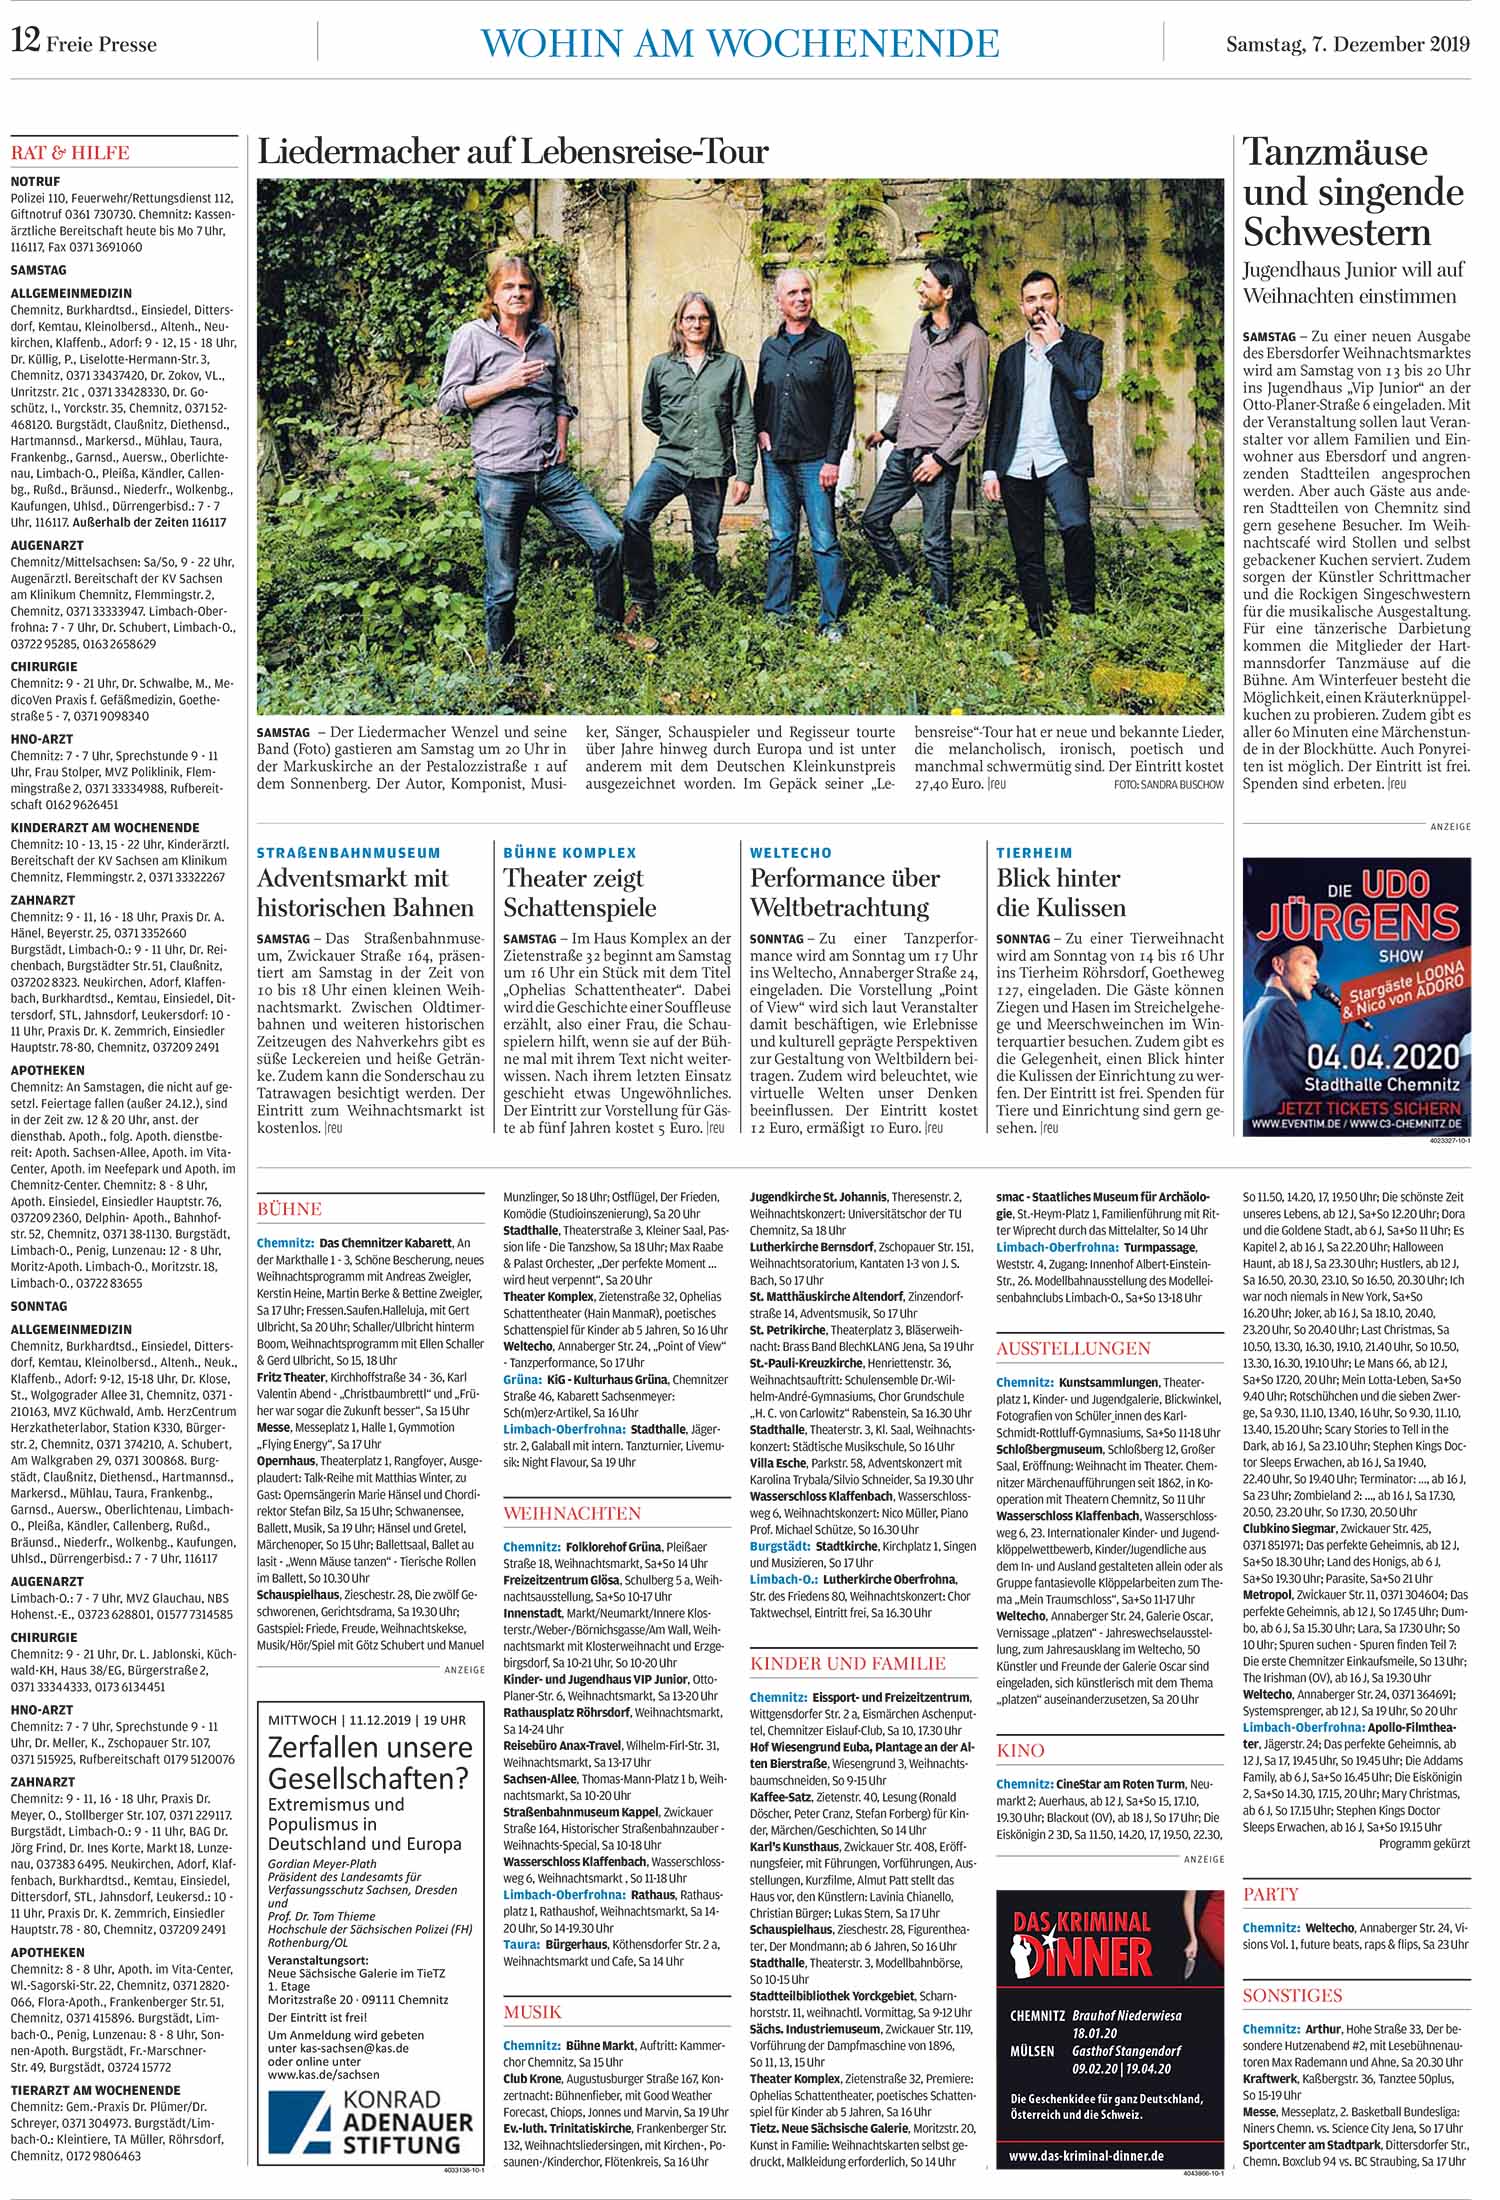 Chemnitzer Zeitung 07